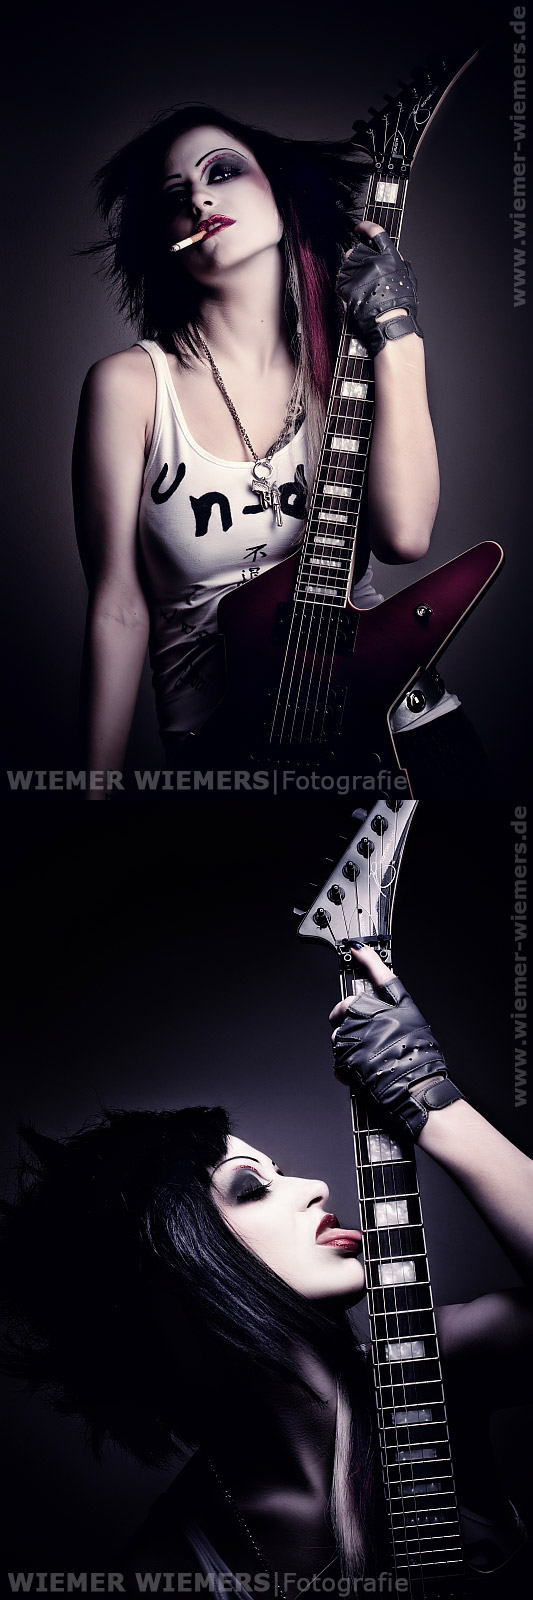 Male model photo shoot of Wiemer Wiemers in Berlin, Germany, makeup by Nadine Emmert